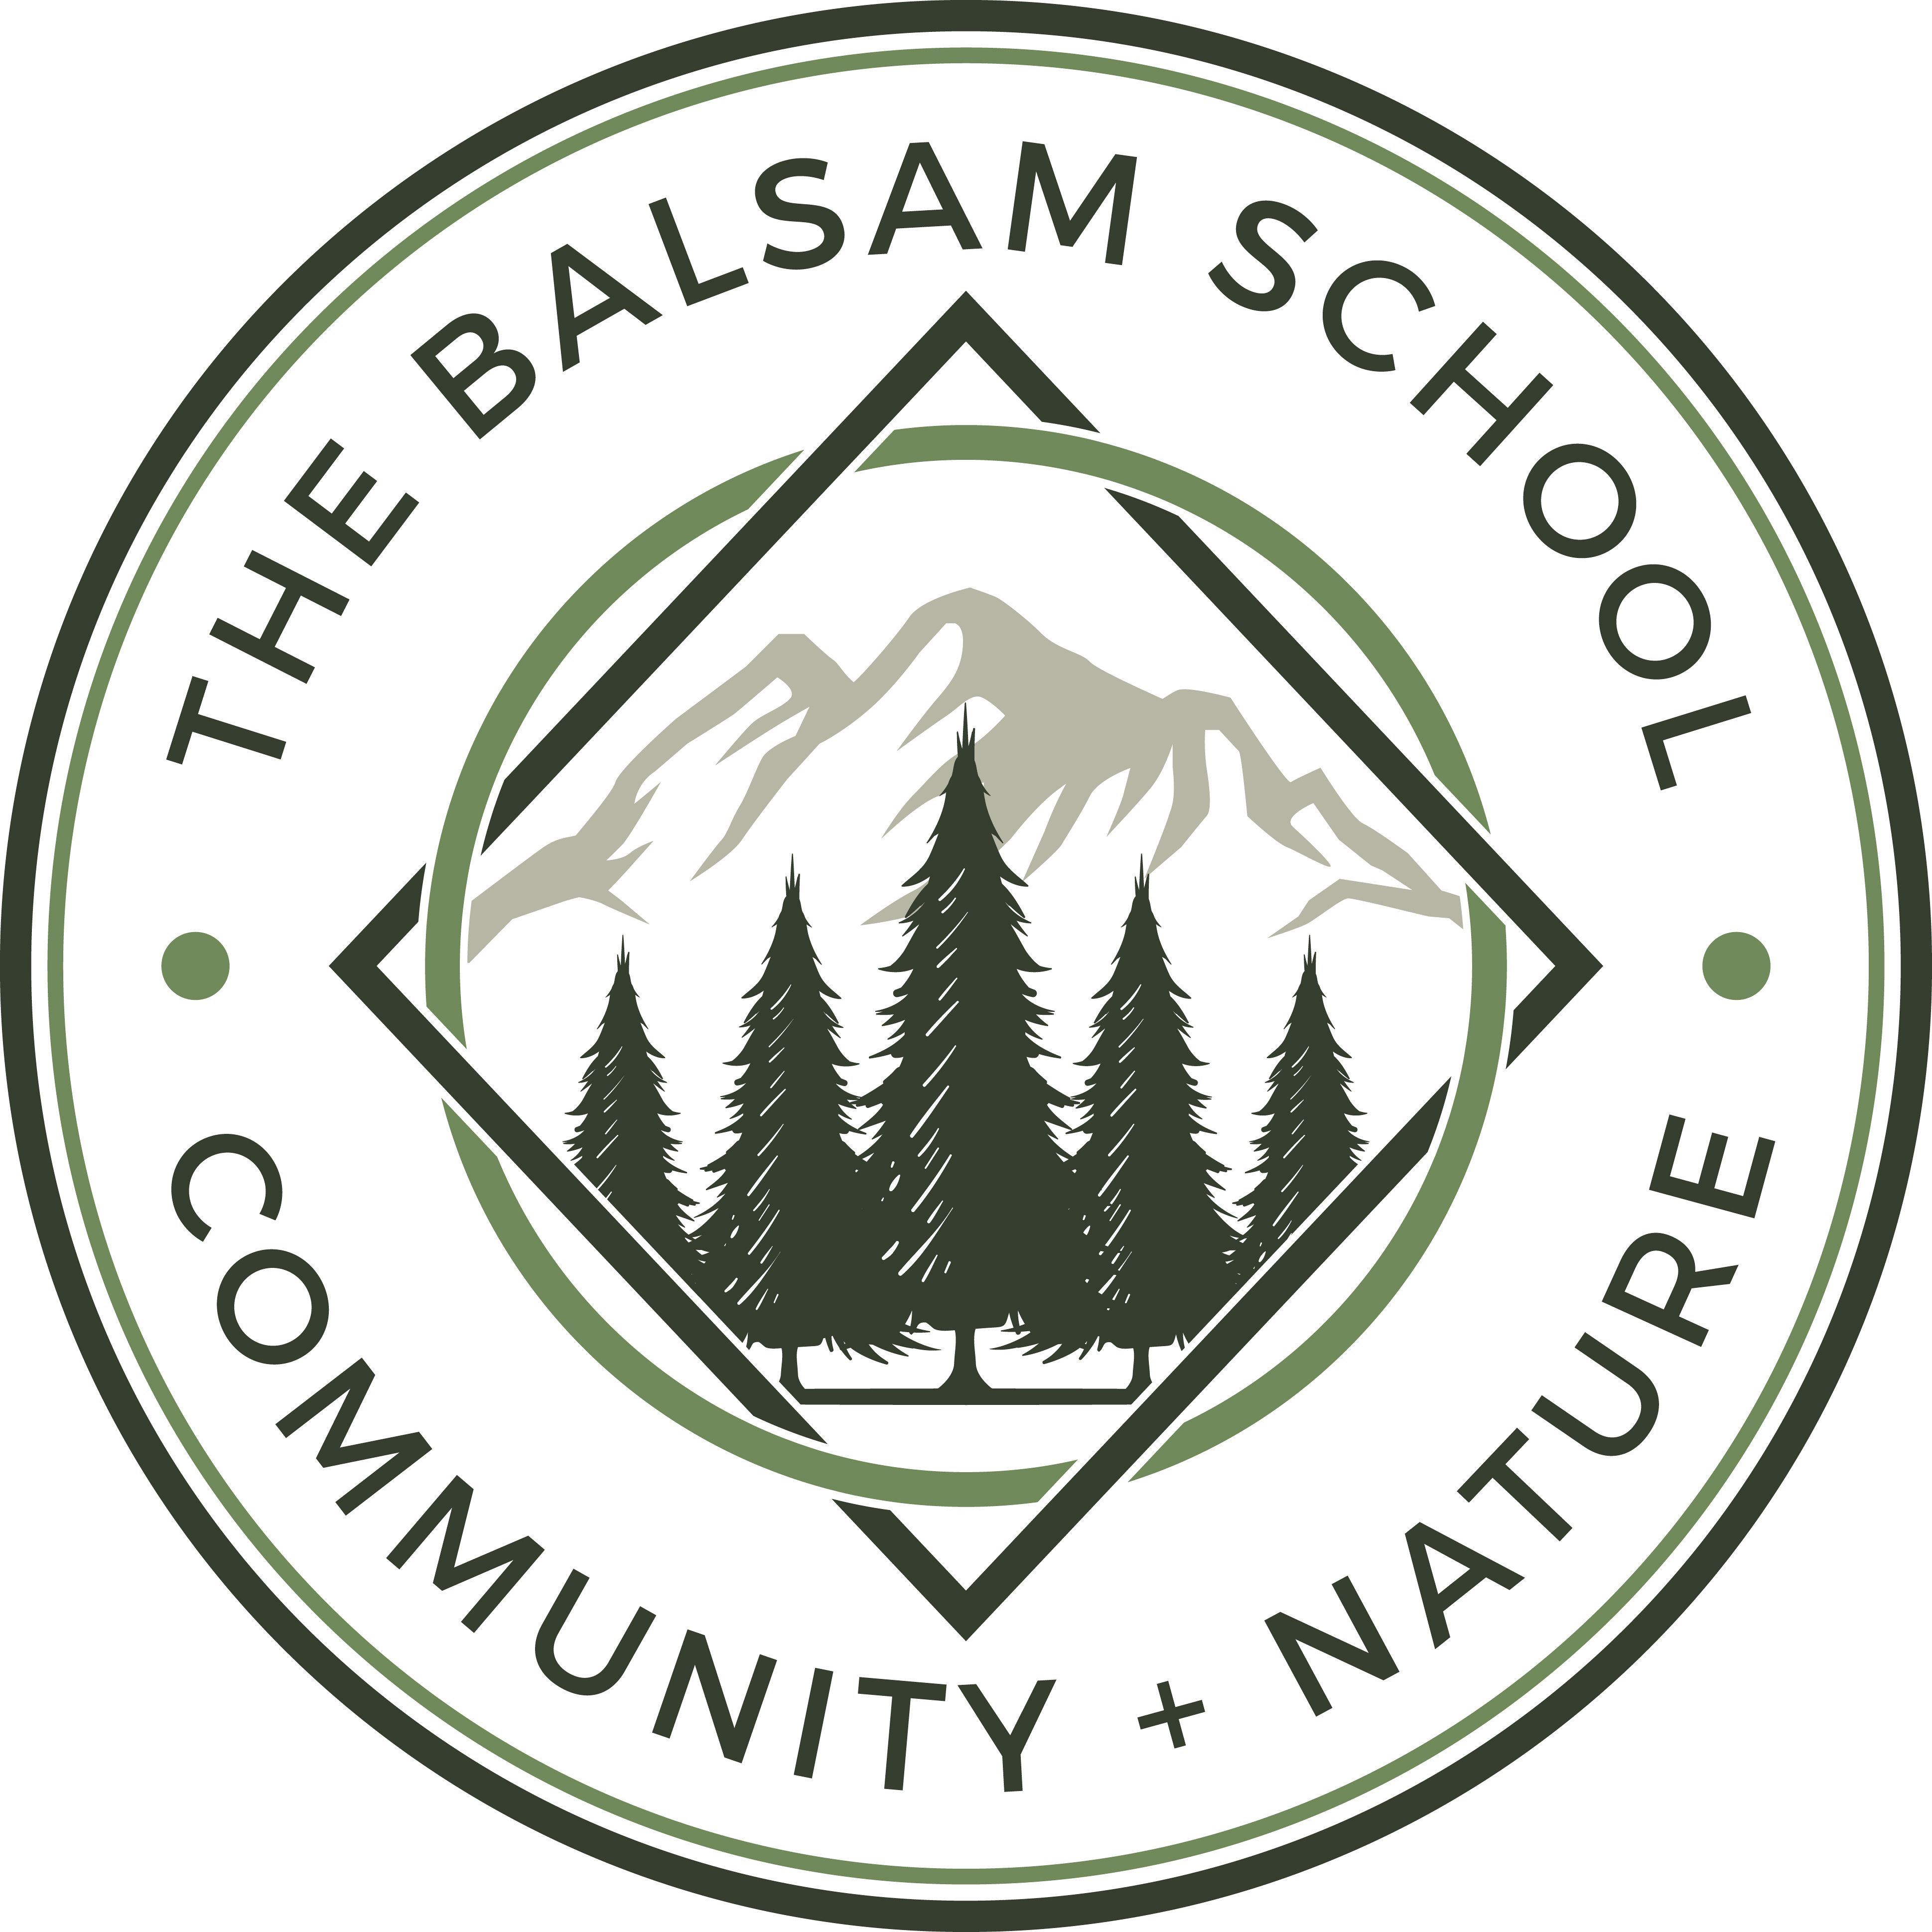 The Balsam School